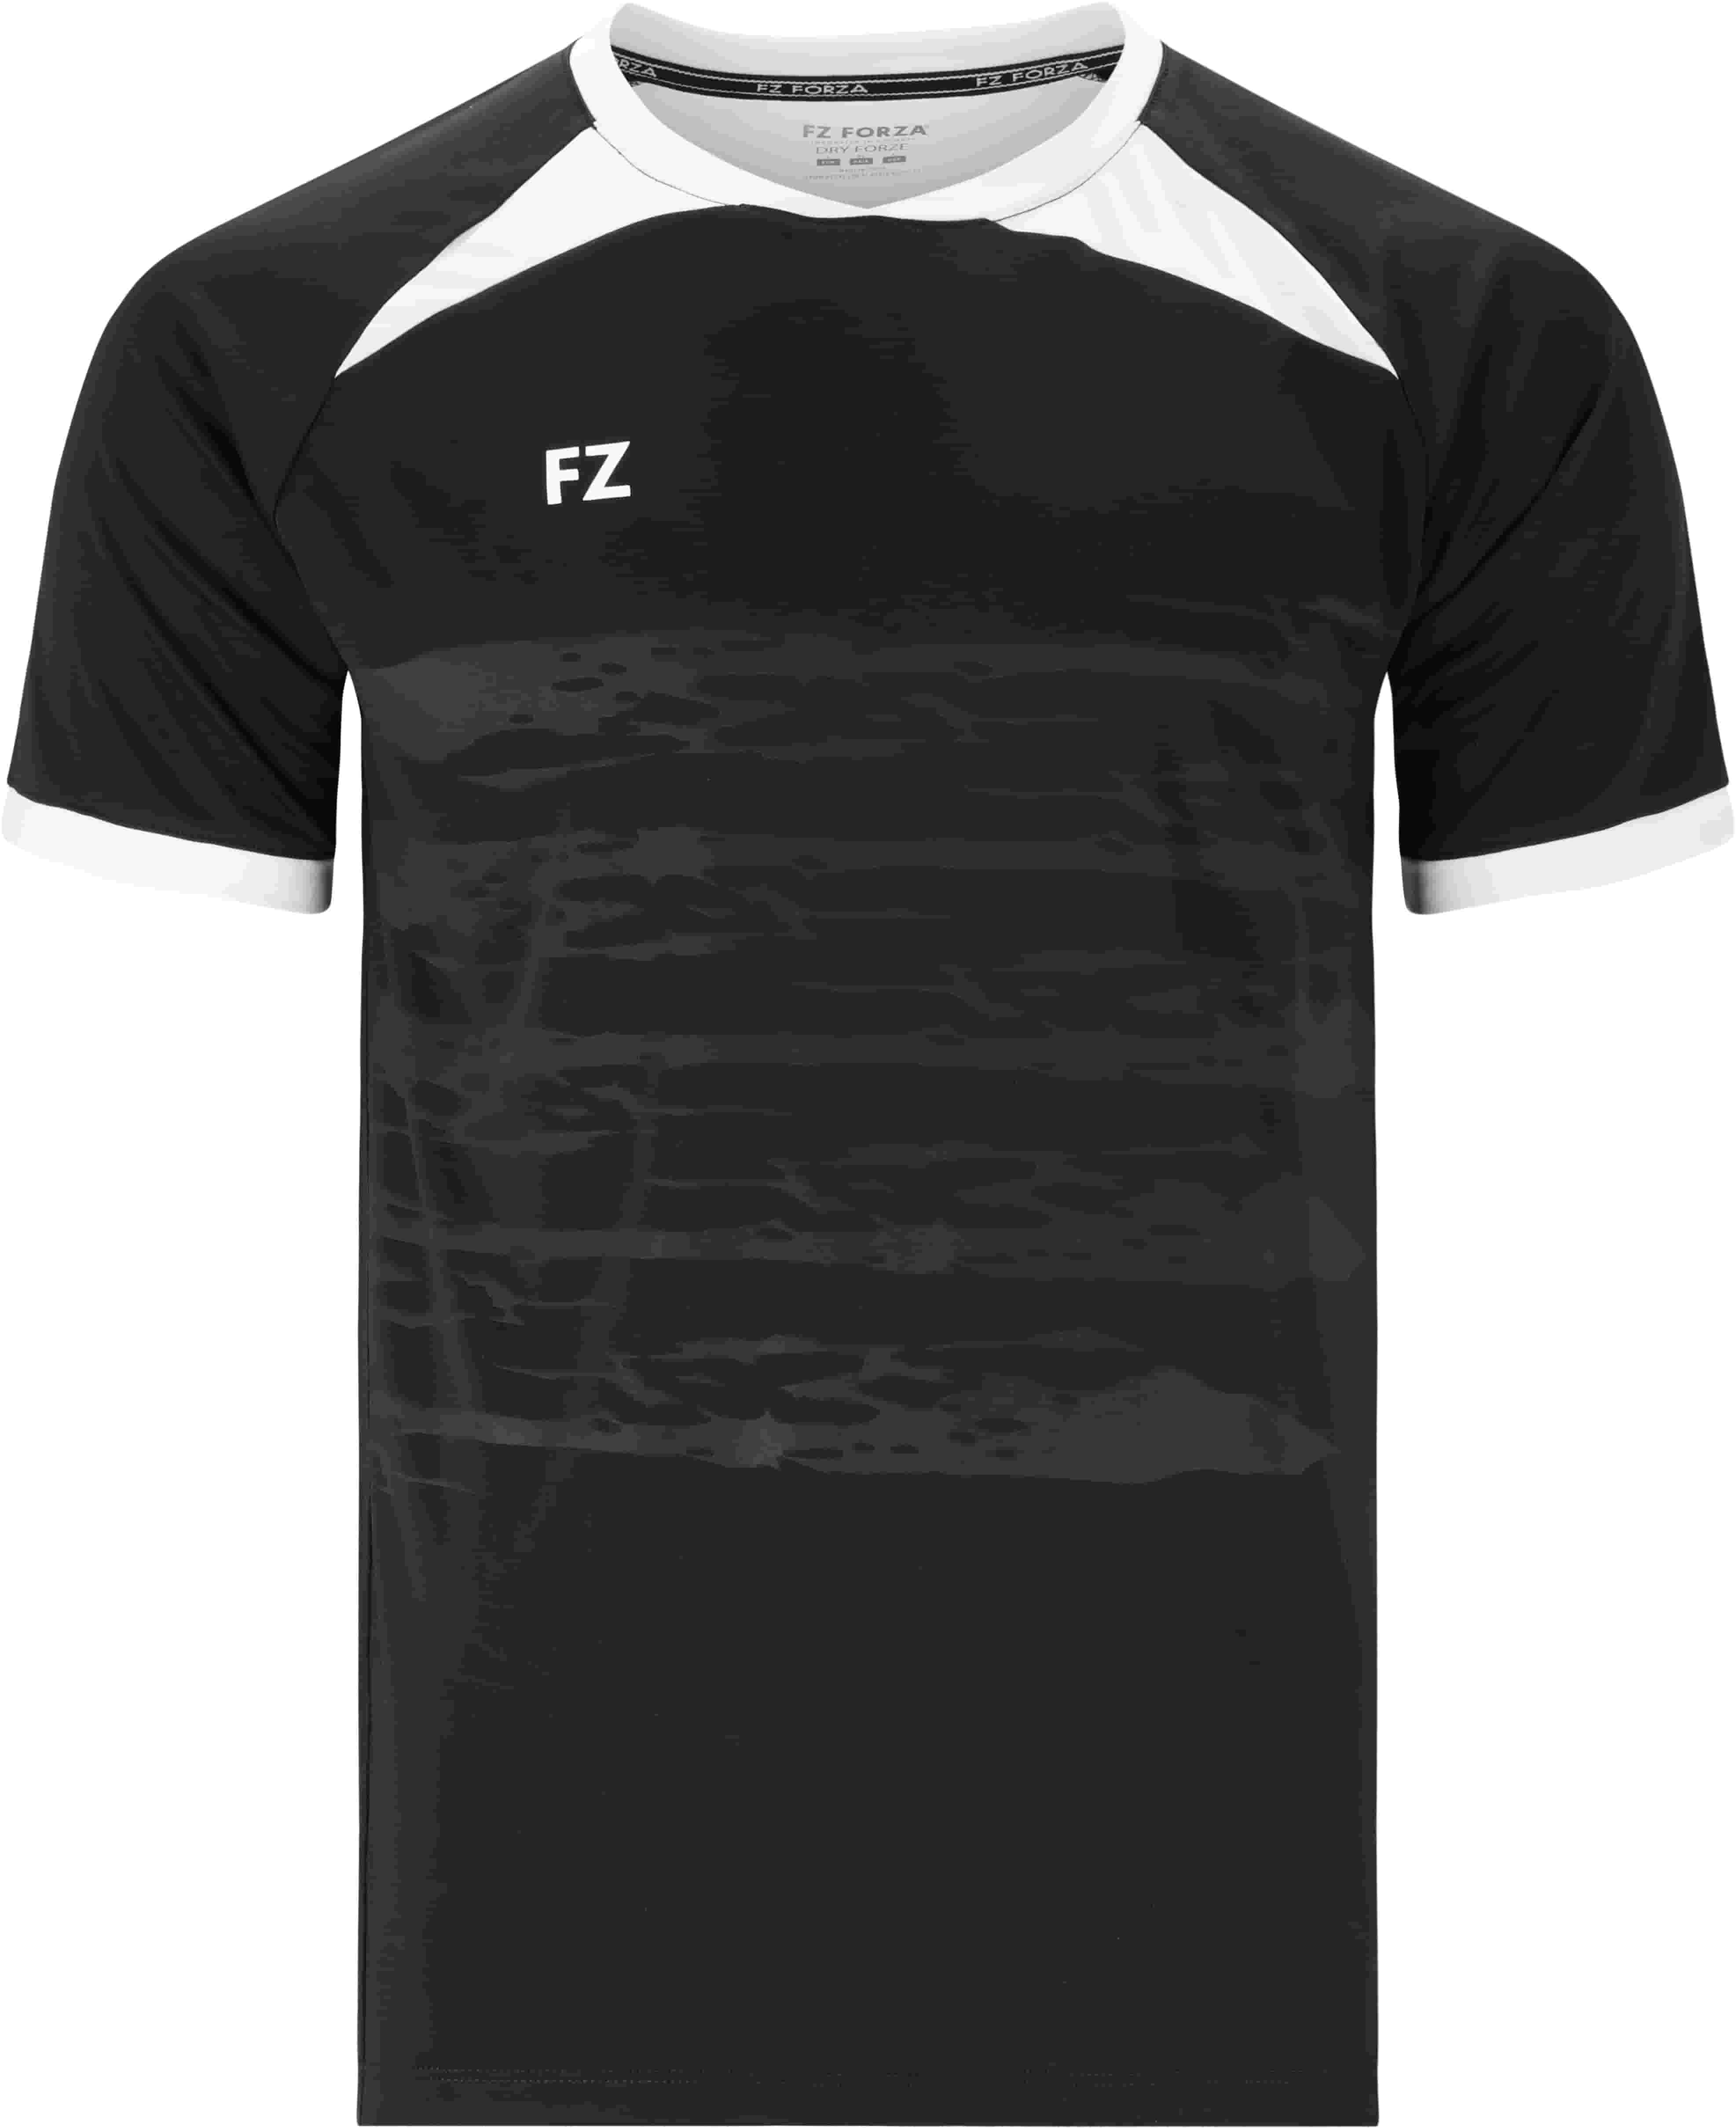 FZ FORZA Agentin M T-Shirt - Schwarz XL